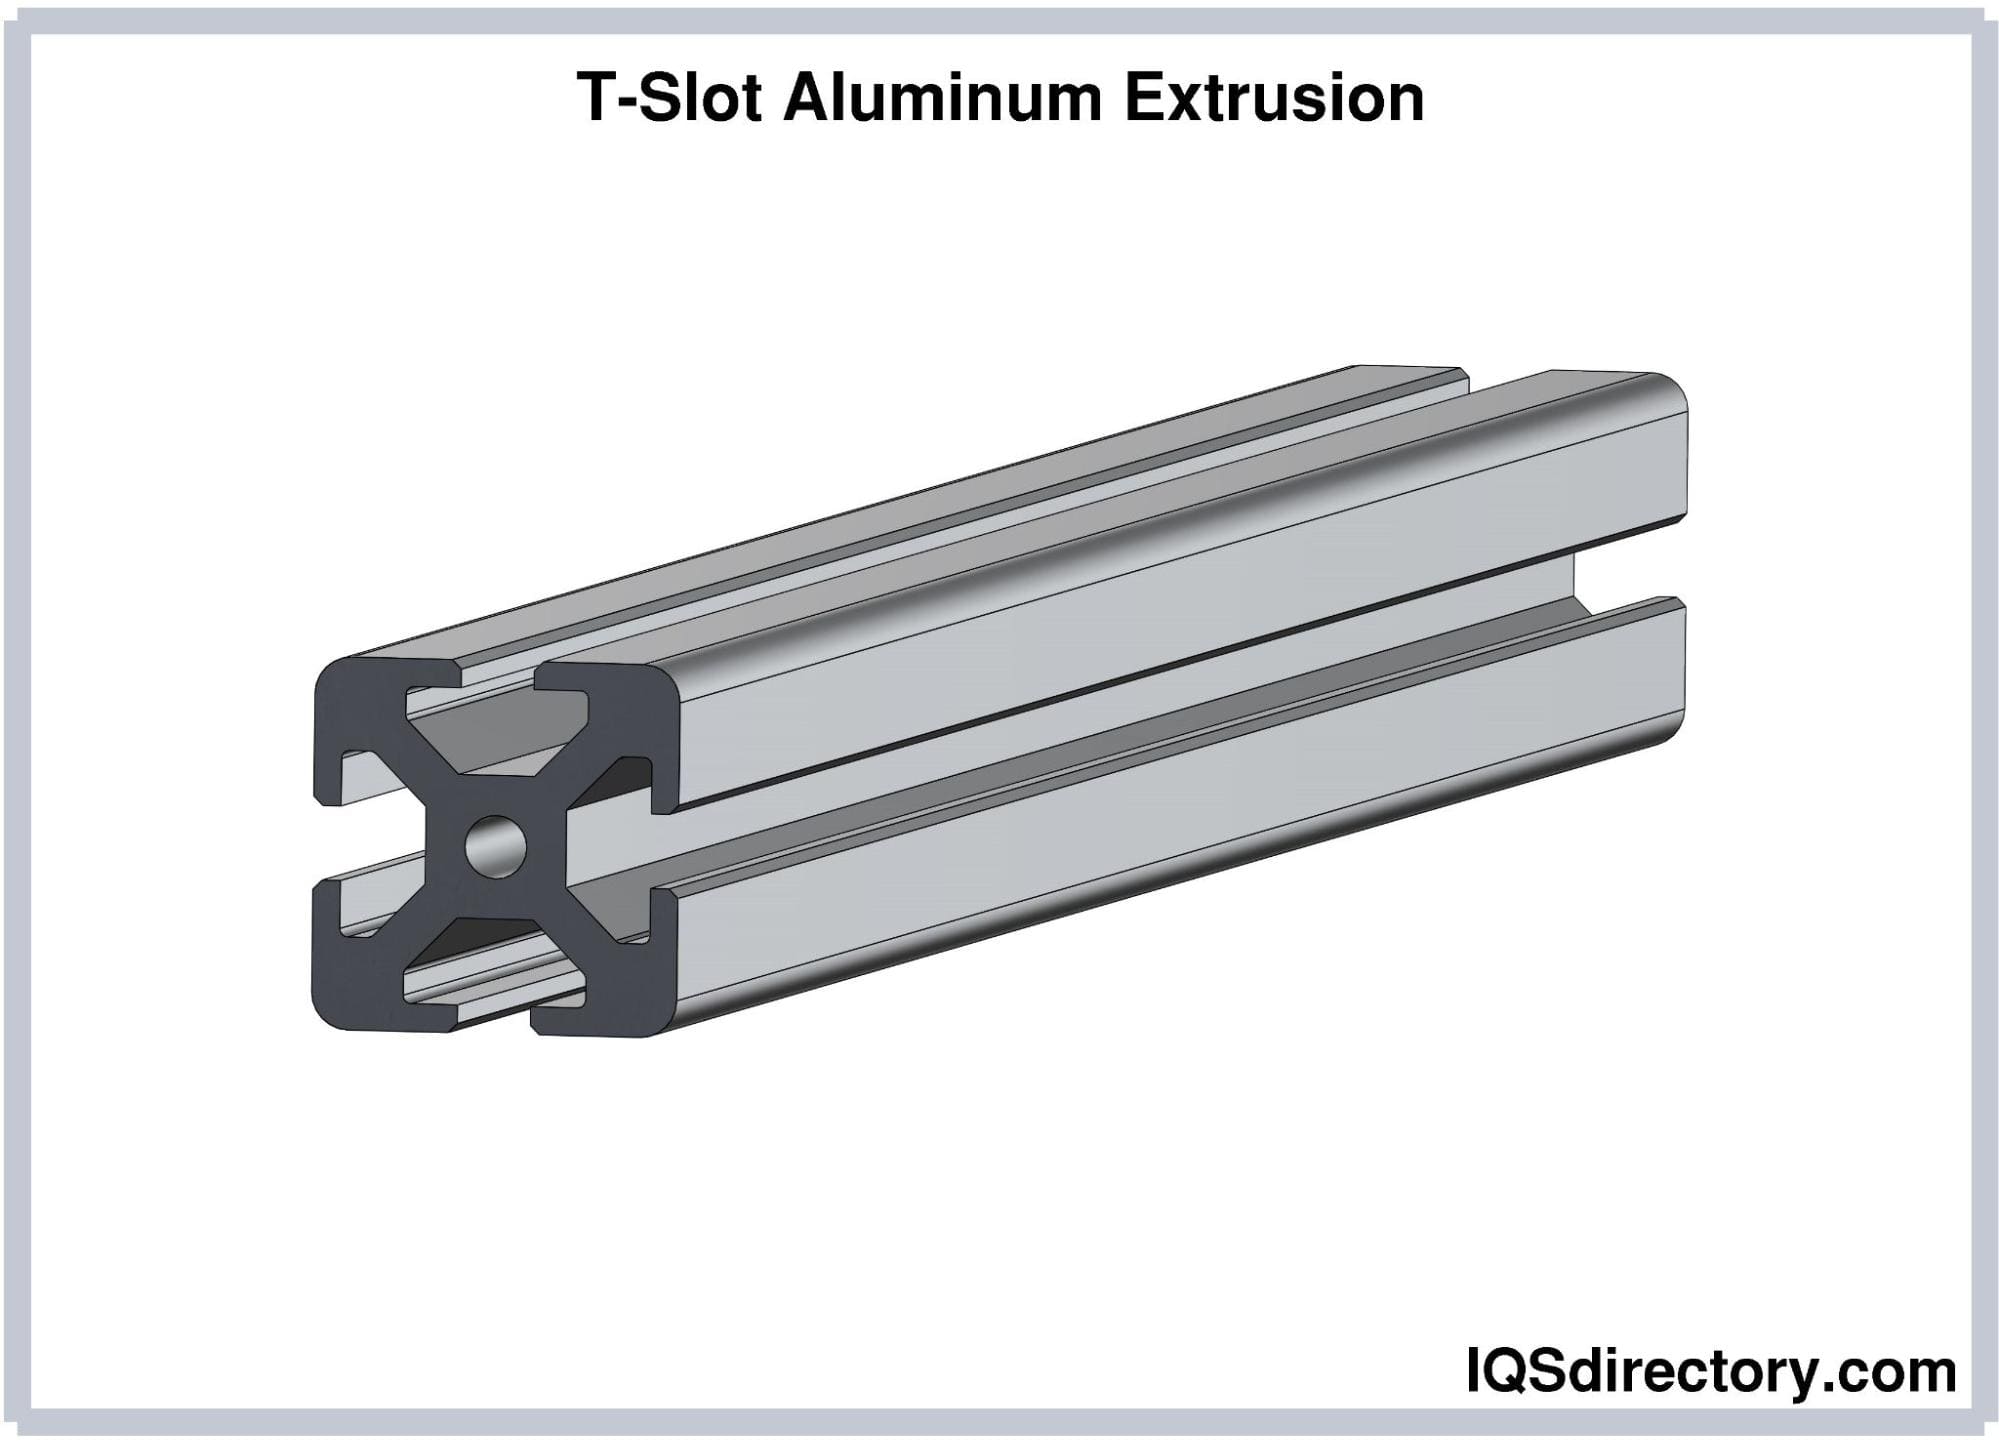 t-slot aluminum extrusion